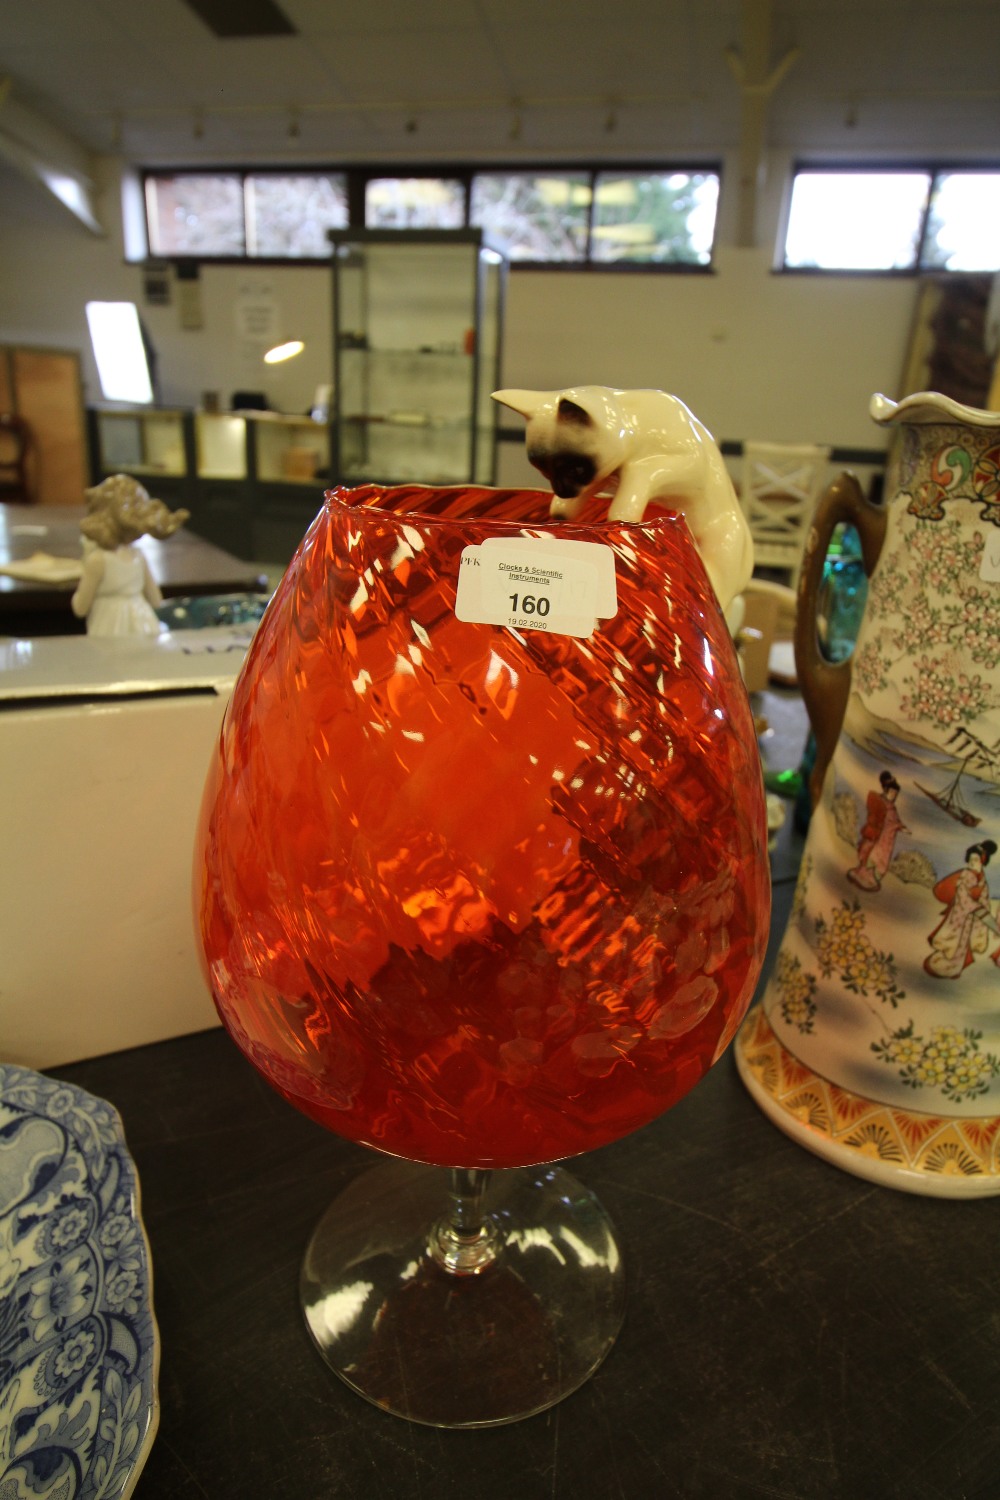 Orange 1970's glass vase with ceramic cat